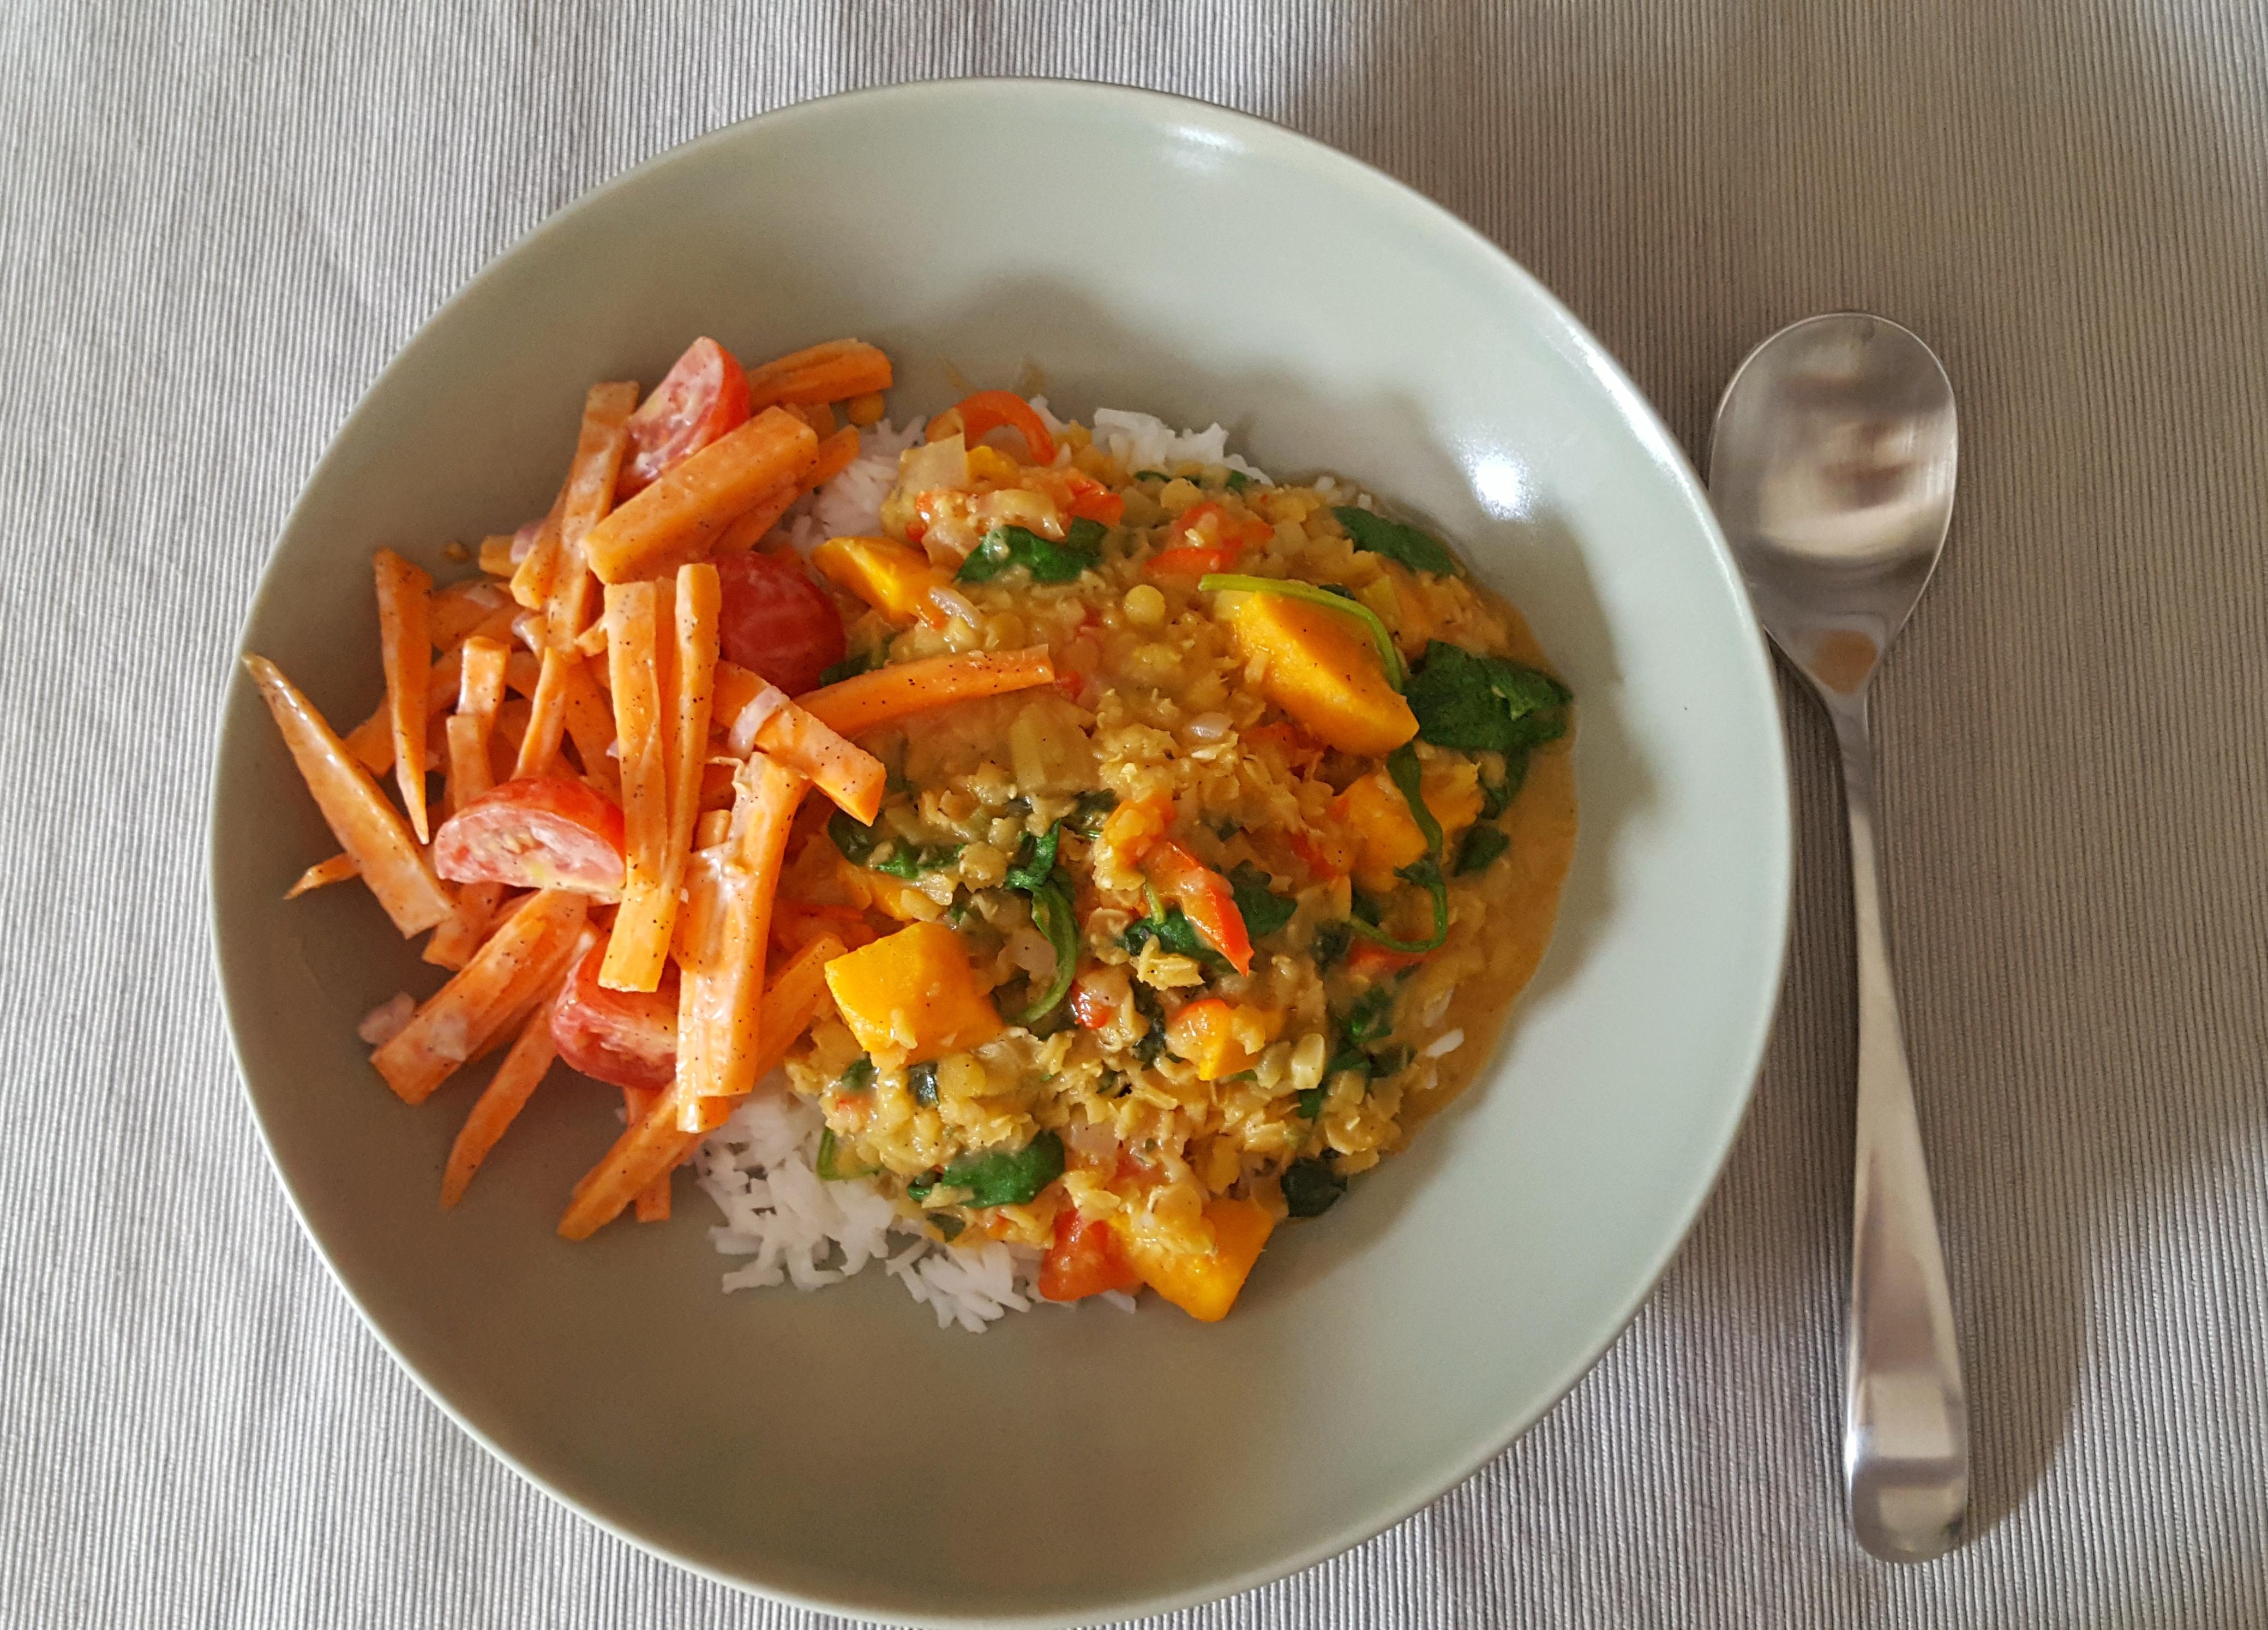 Indisches Curry mit einem Karotten- Salat nach einem Rezept aus Sri Lanka! 
#soulfood #glutenfree #lecker 